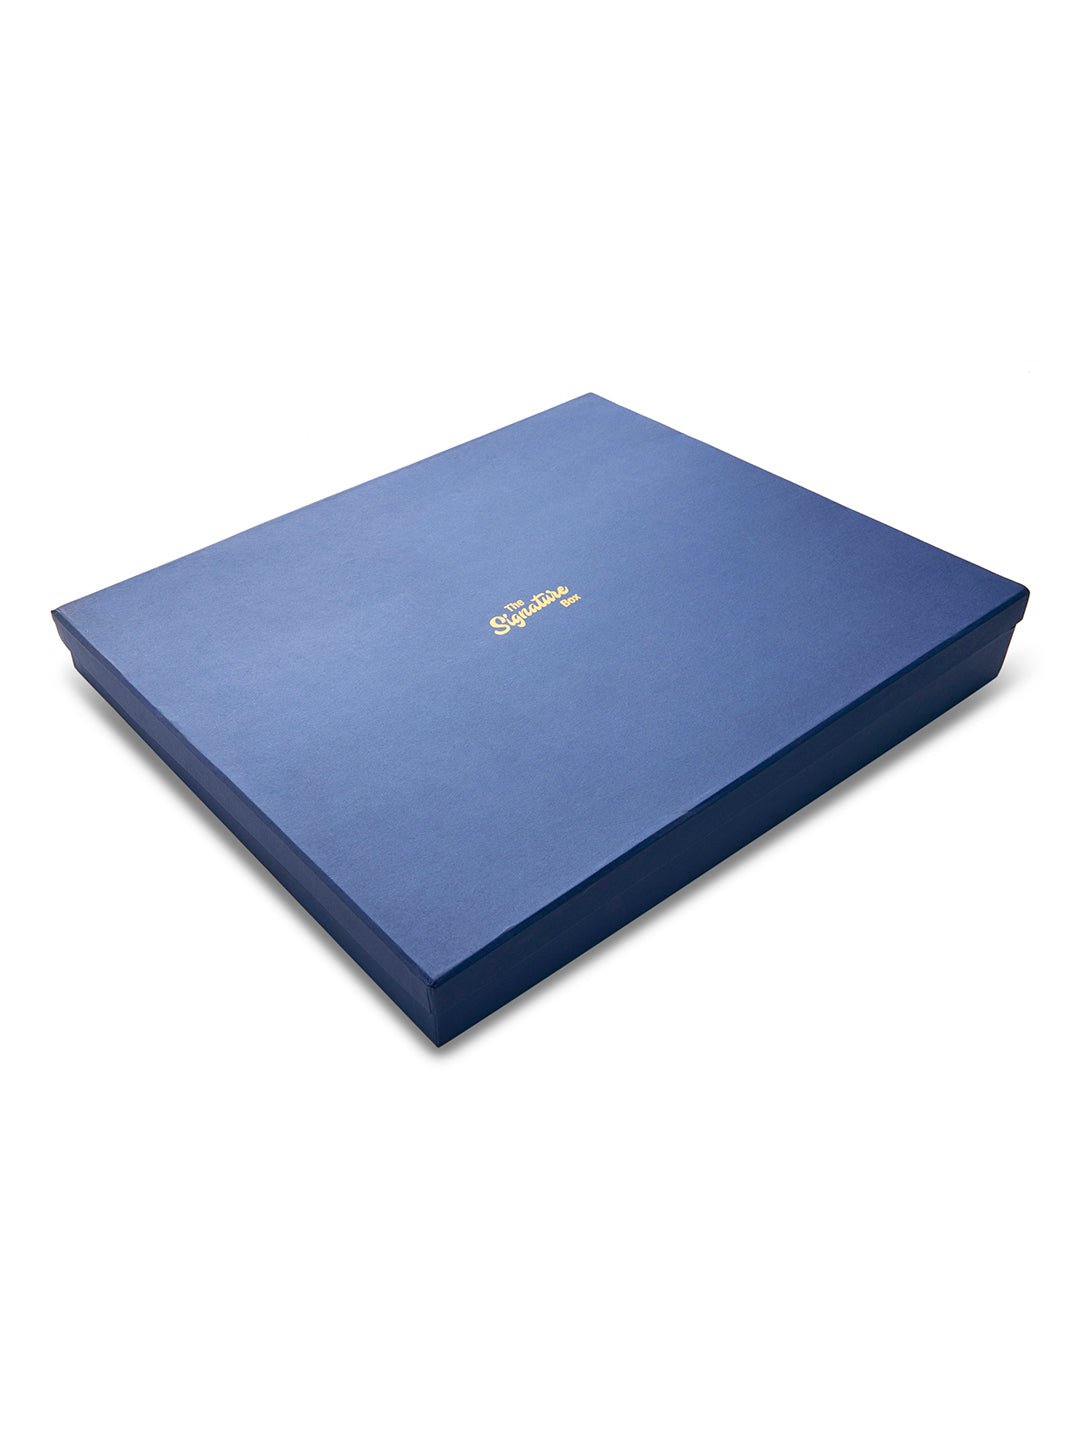 Corporate Essentials Gift Set - The Signature Box